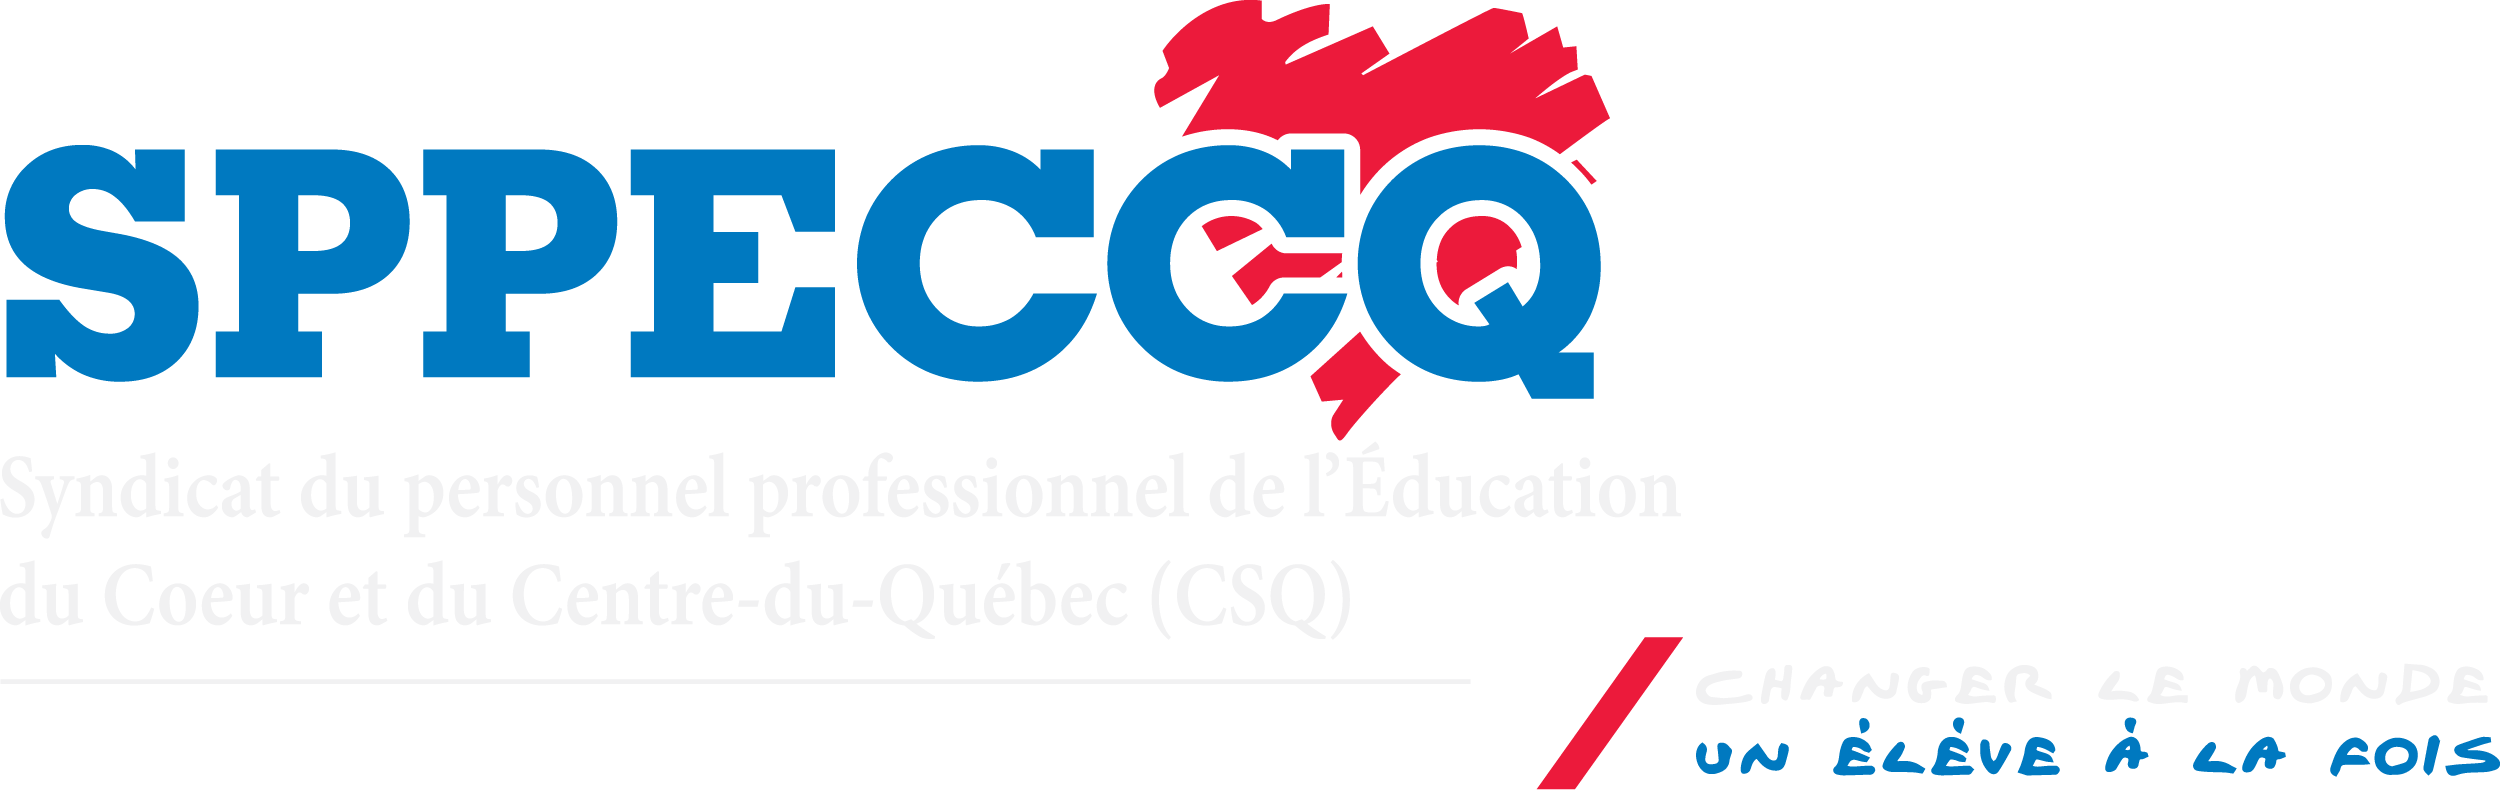 Syndicat du personnel professionnel de l'Éducation du Coeur et du Centre-du-Québec (SPPECCQ CSQ)